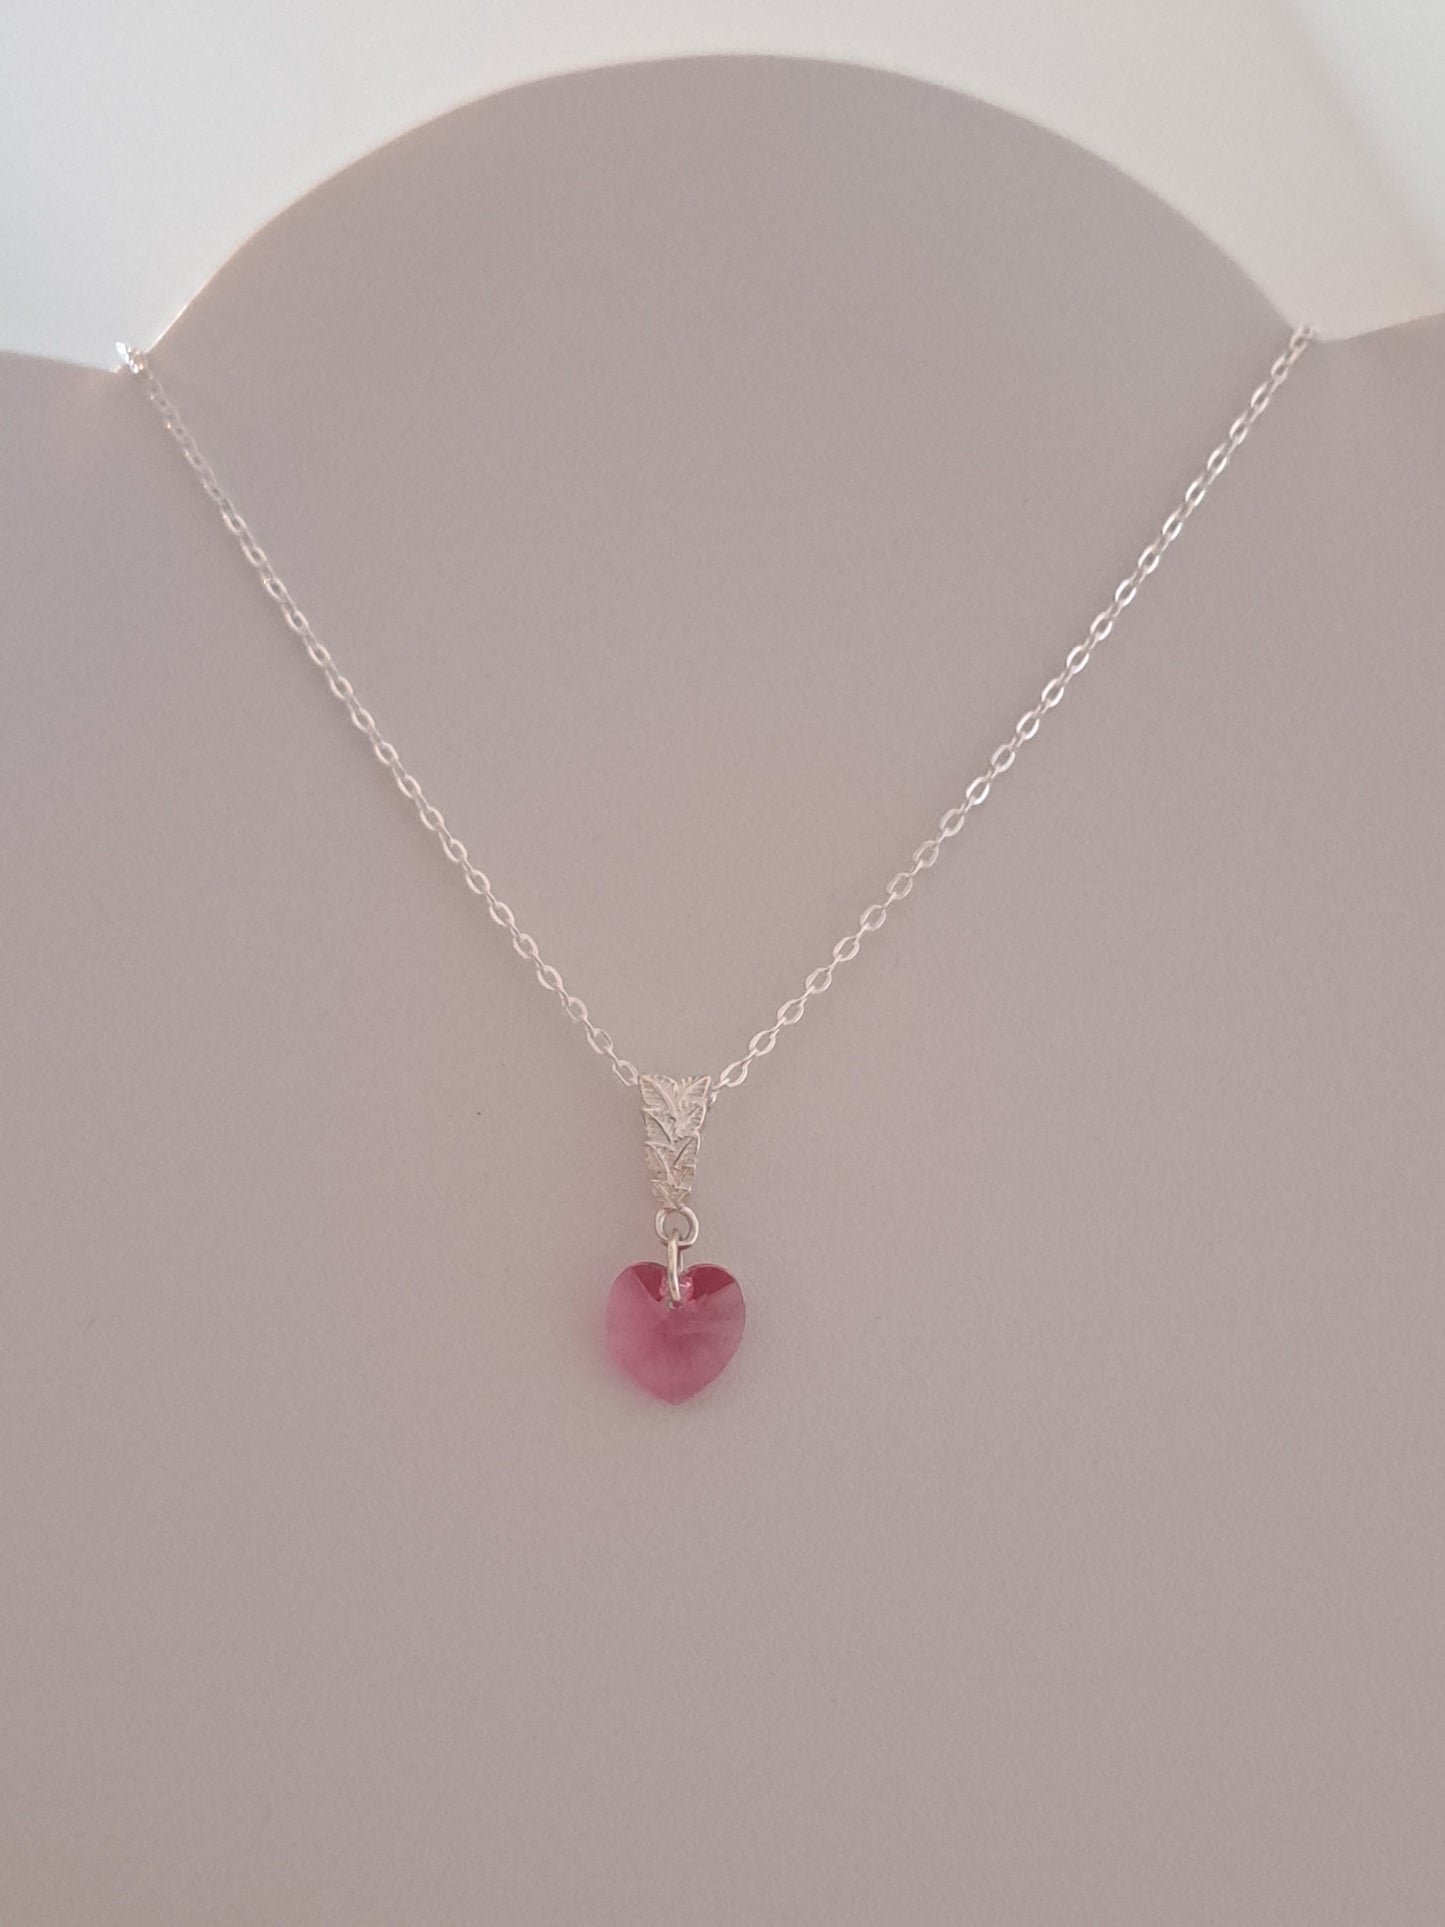 Collier en argent pendentif coeur cristal rose. Site de bijoux. France